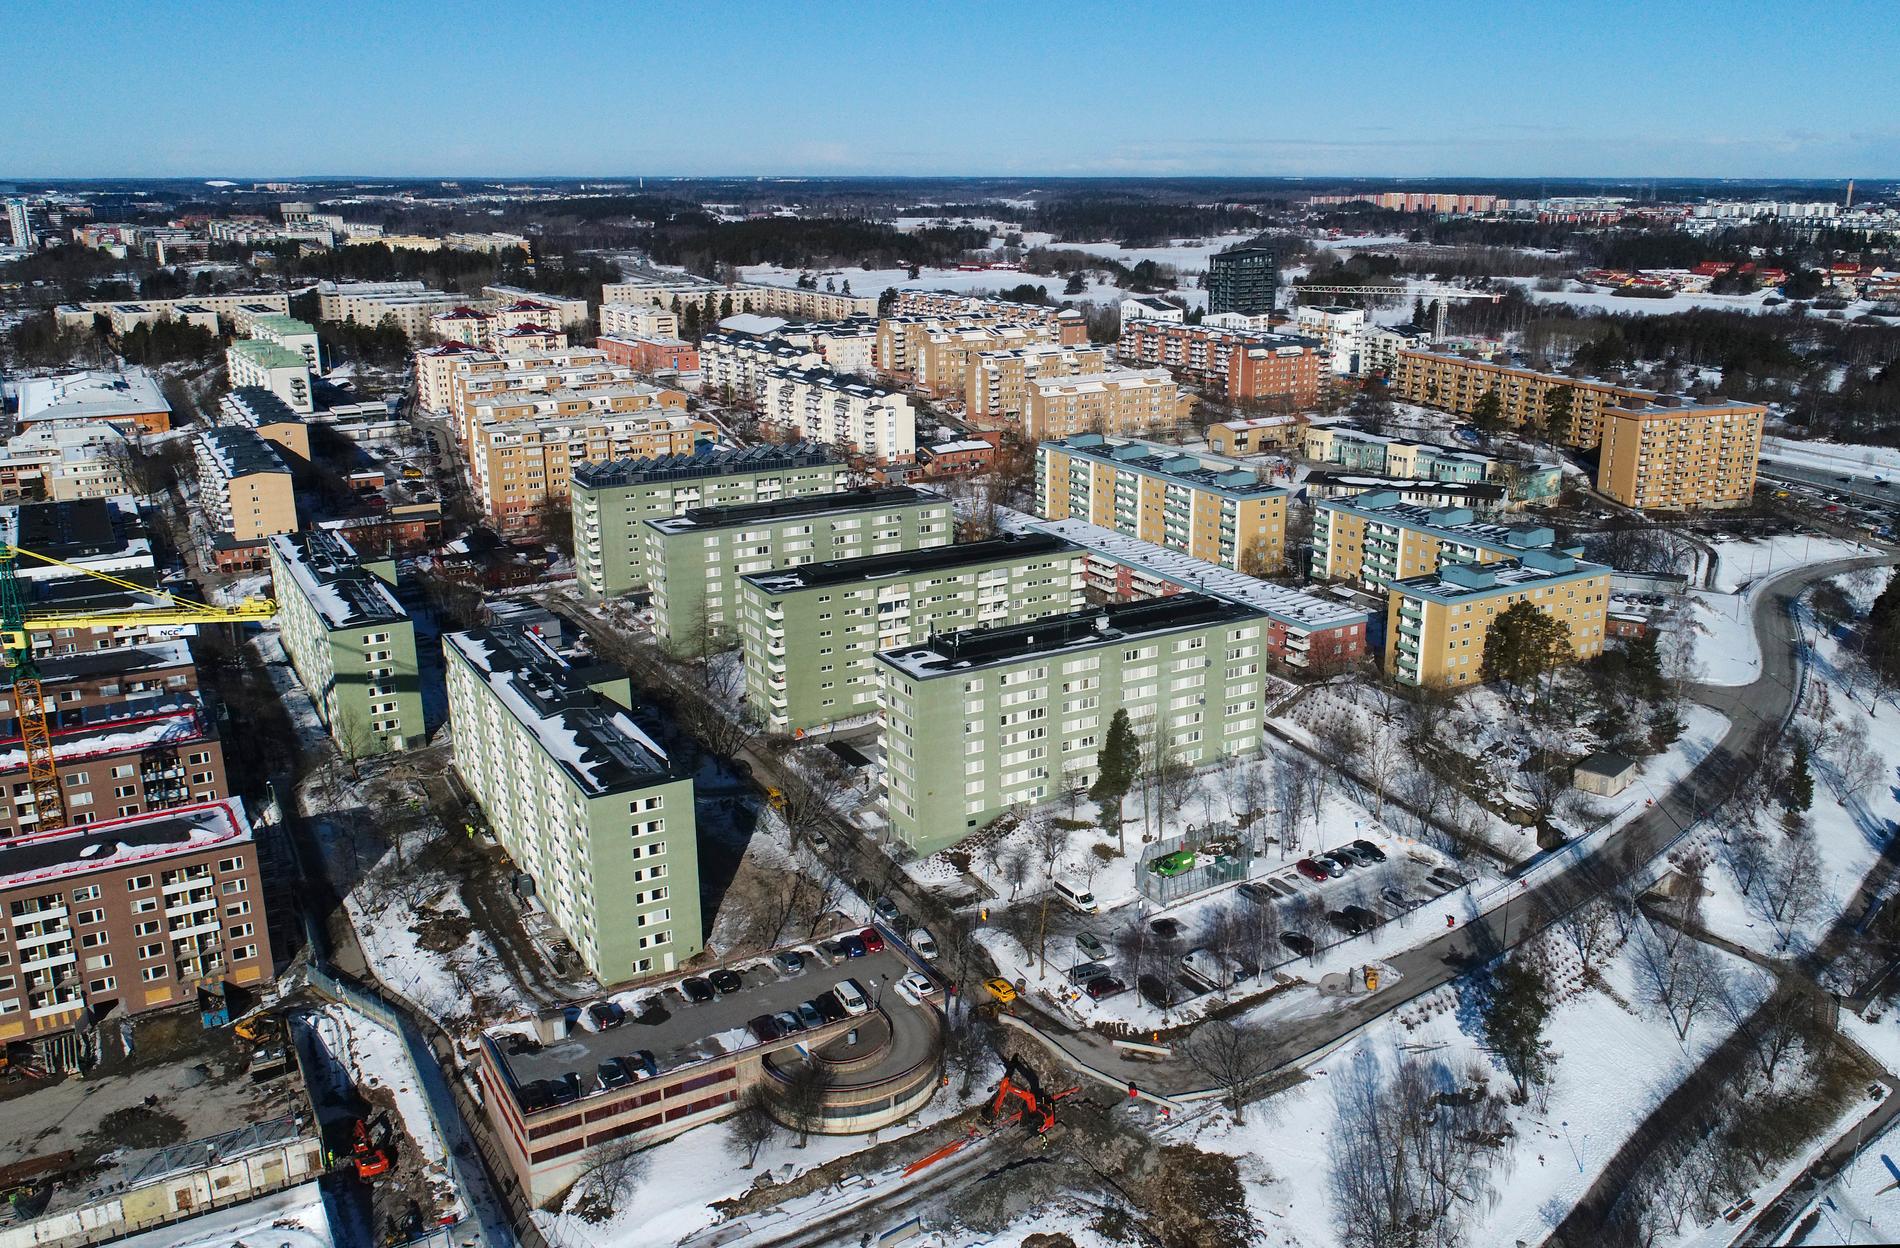 Rinkeby, förort till Stockholm, som ingår i ett av Sveriges särskilt utsatta områden. Sysselsättningsgraden har på senare år ökat i särskilt utsatta områden, men nu finns risk för att den utvecklingen bryts. Arkivbild.